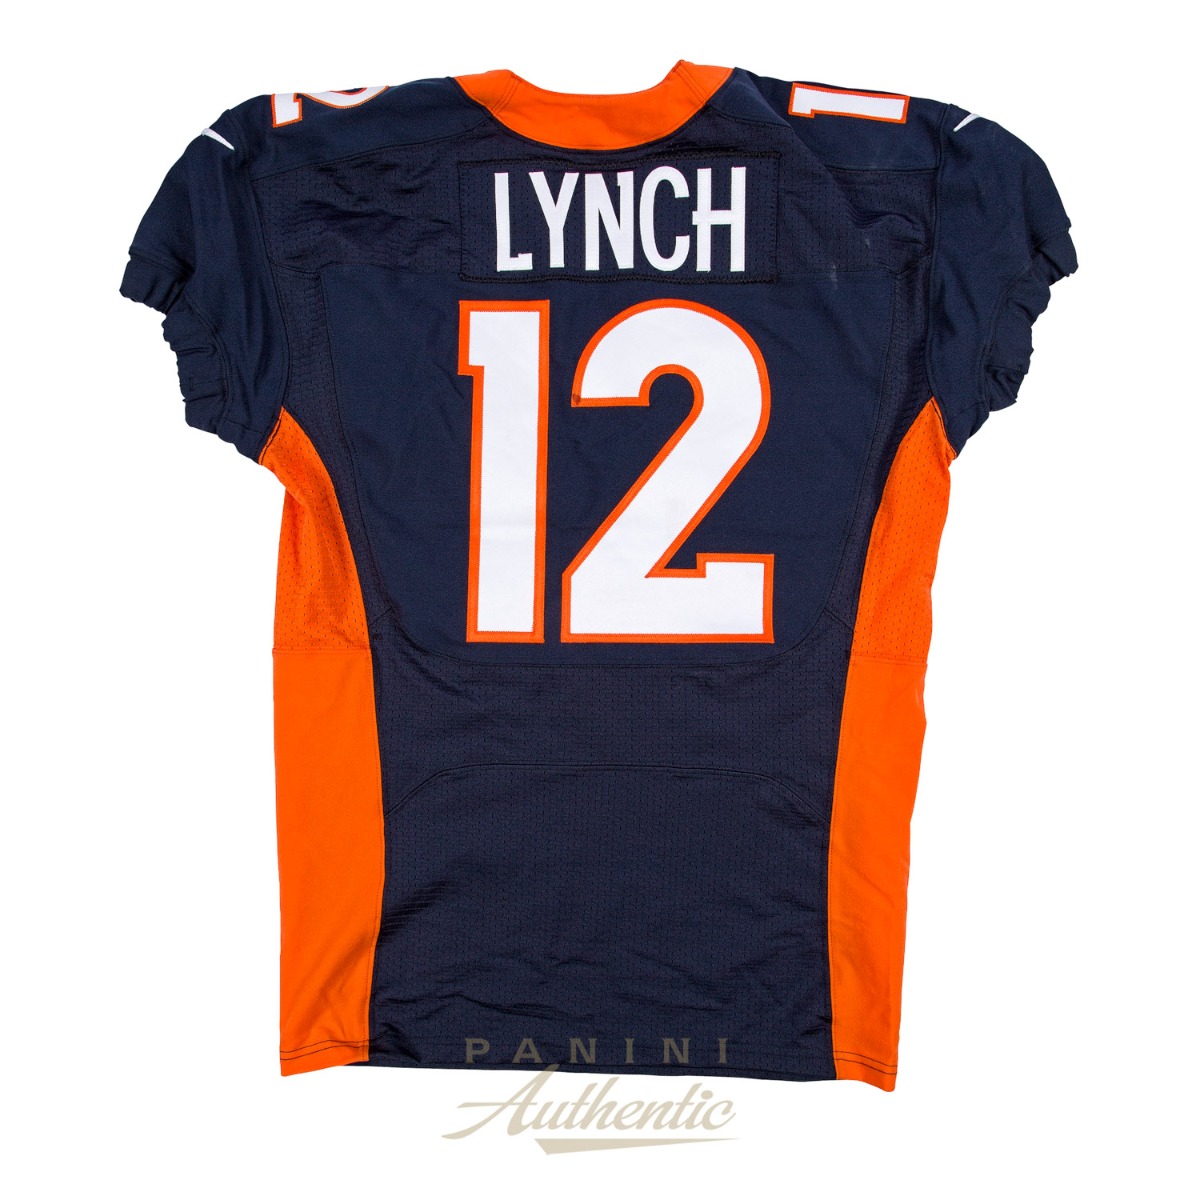 lynch jersey